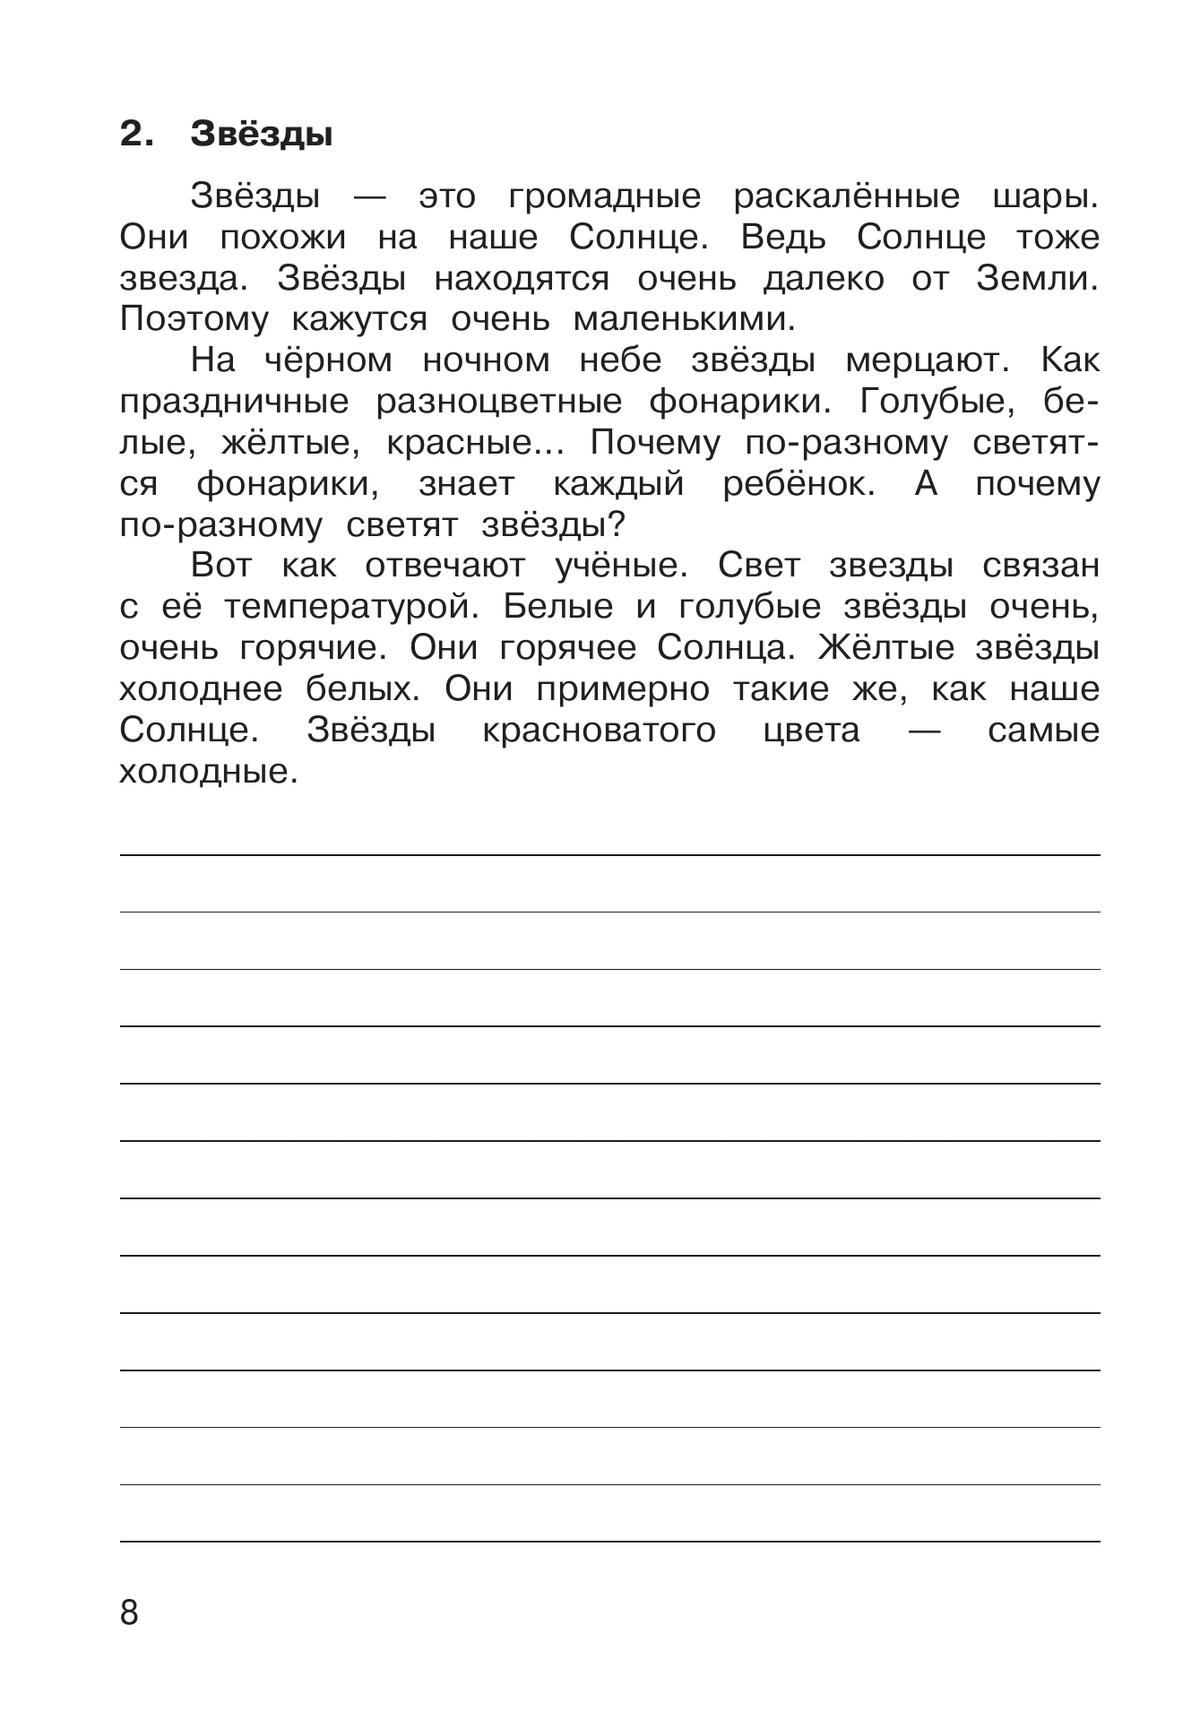 Русский язык. 3 класс. В 2 частях. Часть 1. Рабочая тетрадь к учебному пособию 7